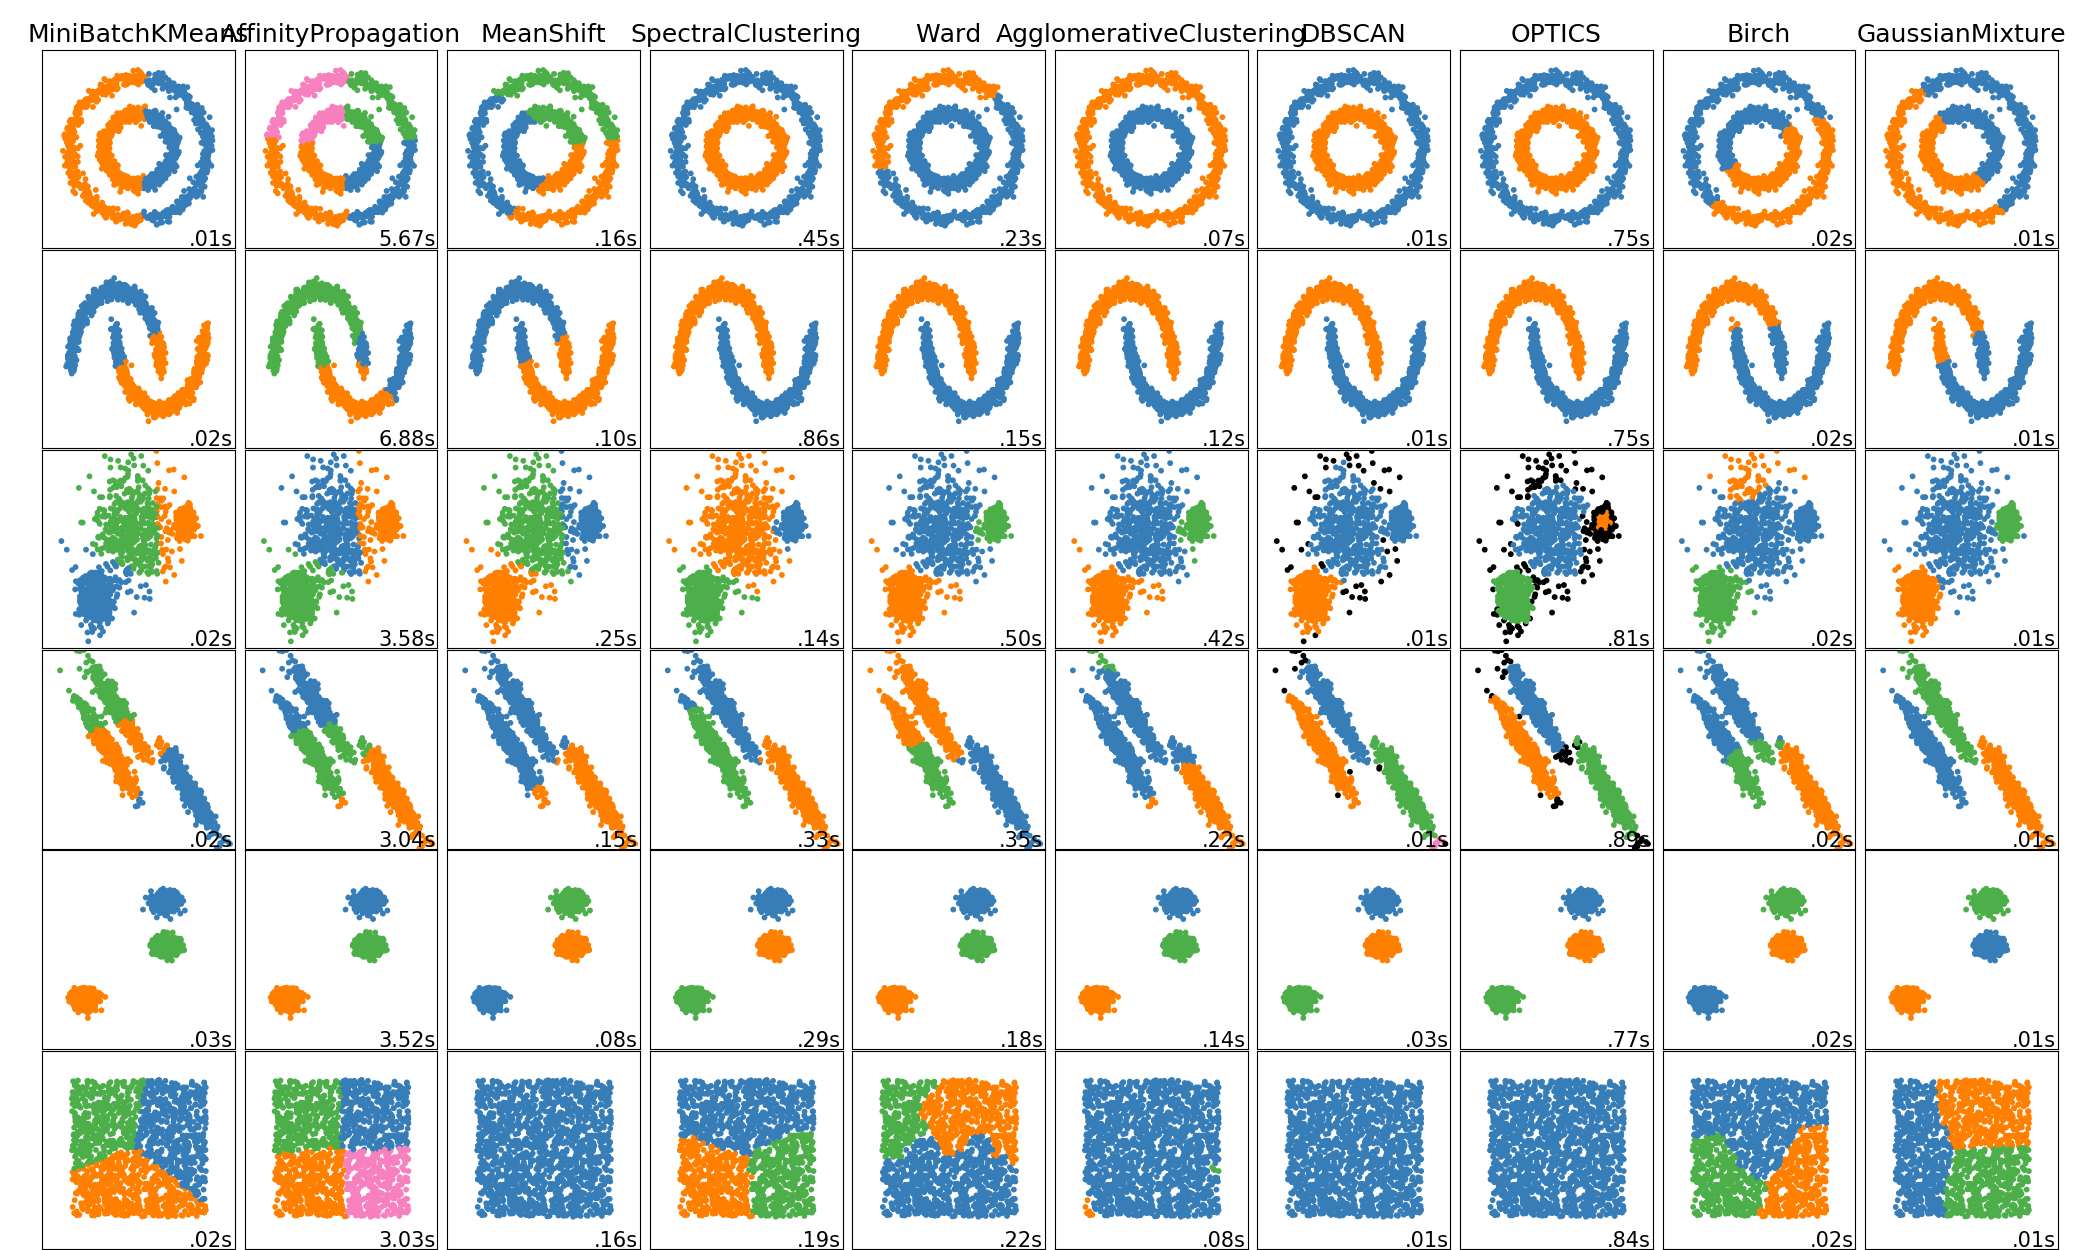 scikit-learn's clustering